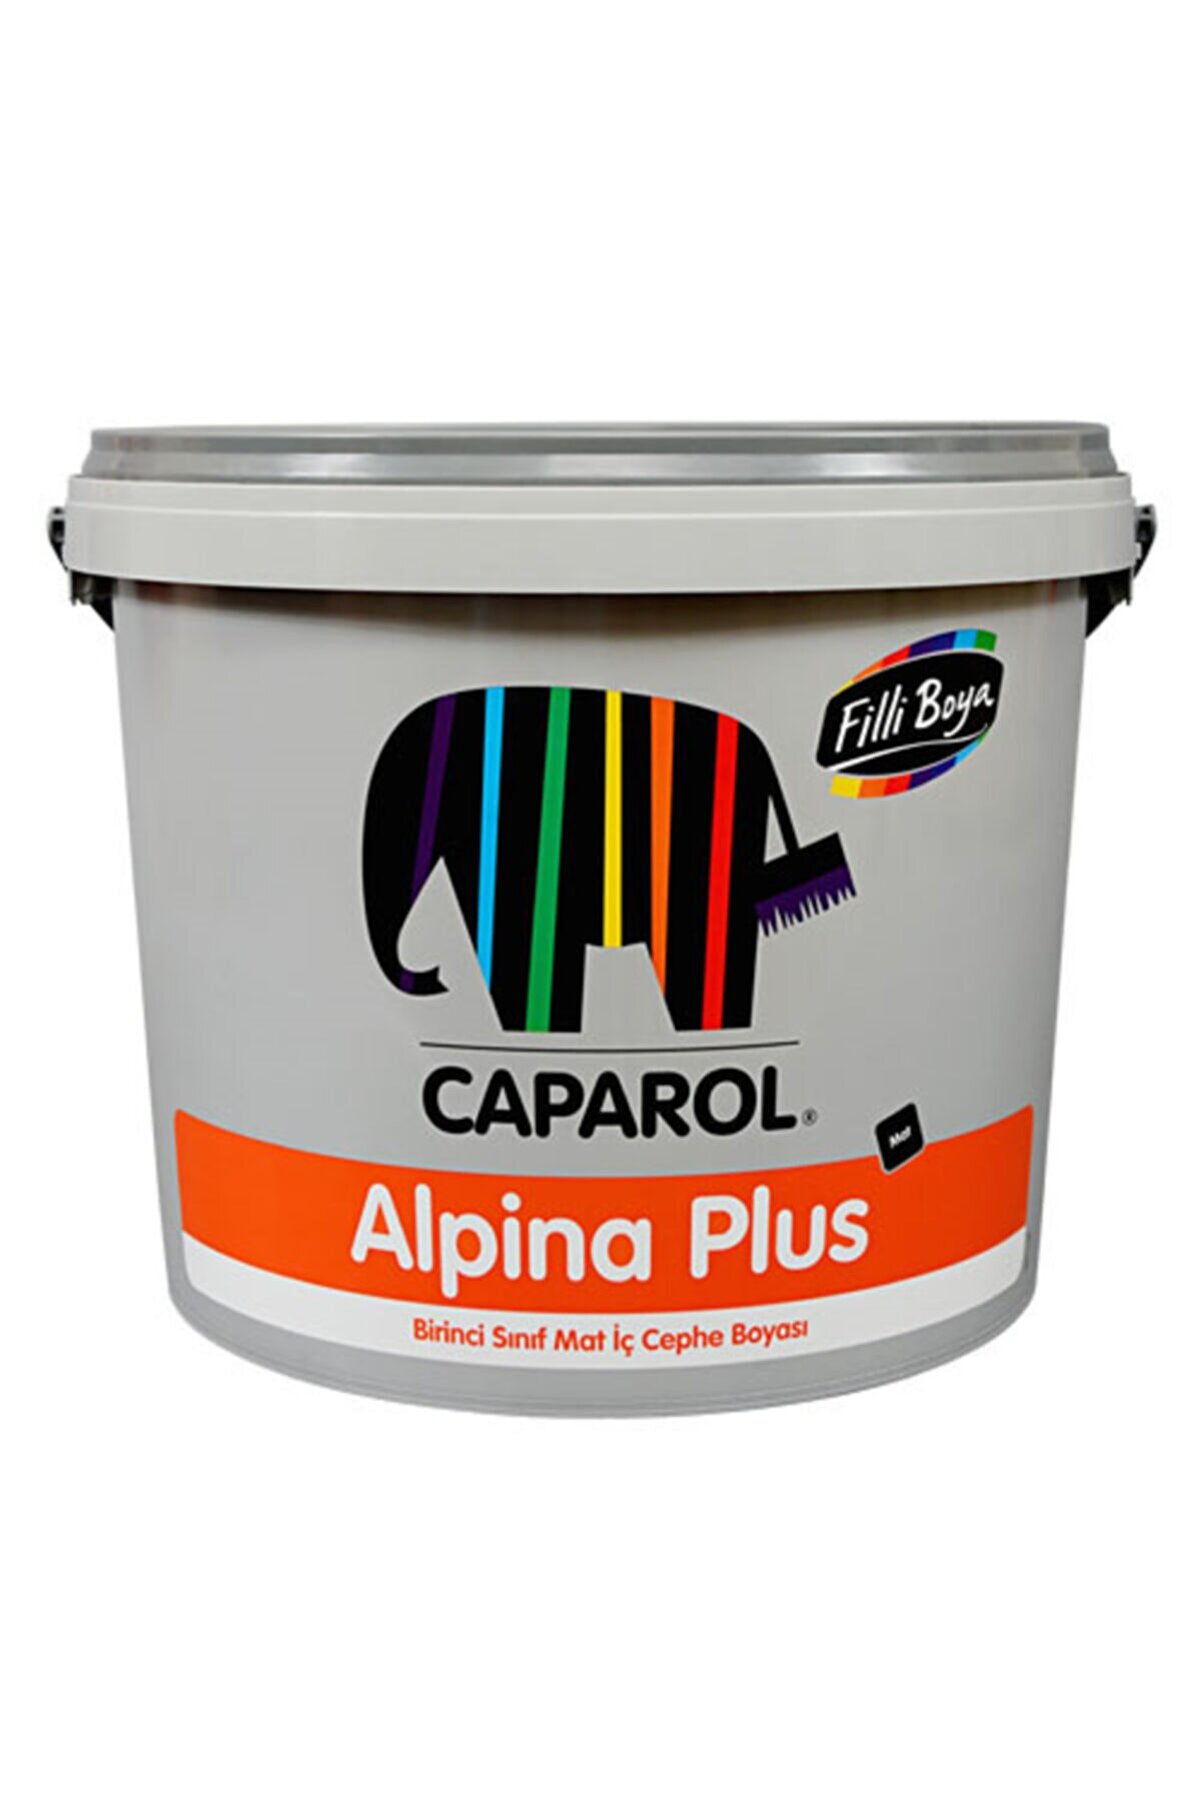 Filli Boya Alpina Plus Iç Cephe Boyası (7.5l Aki Rengi)